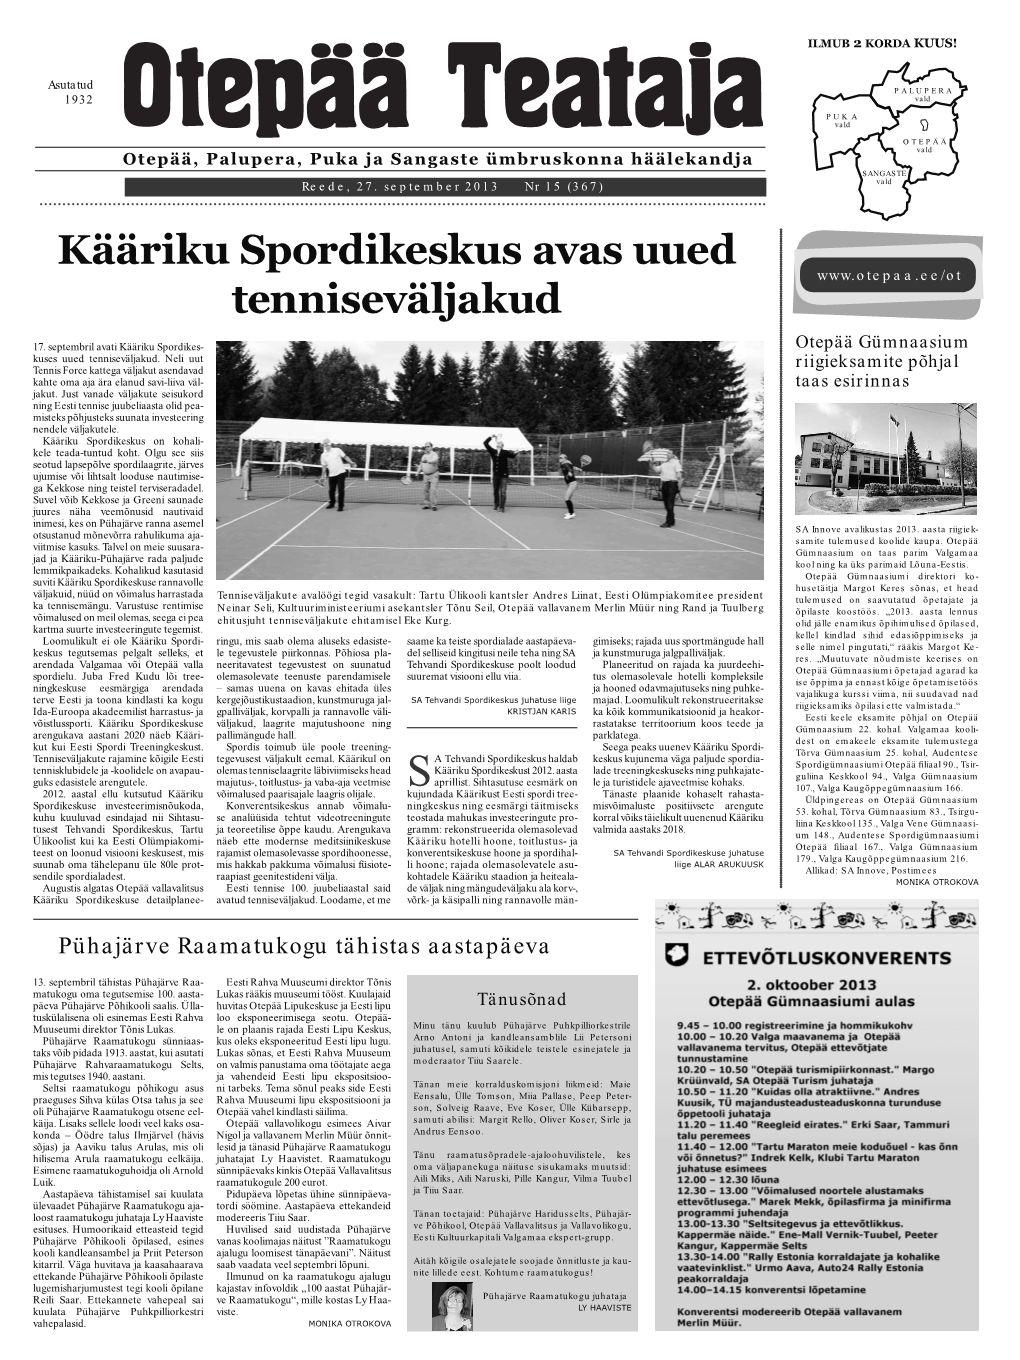 Kääriku Spordikeskus Avas Uued Tenniseväljakud